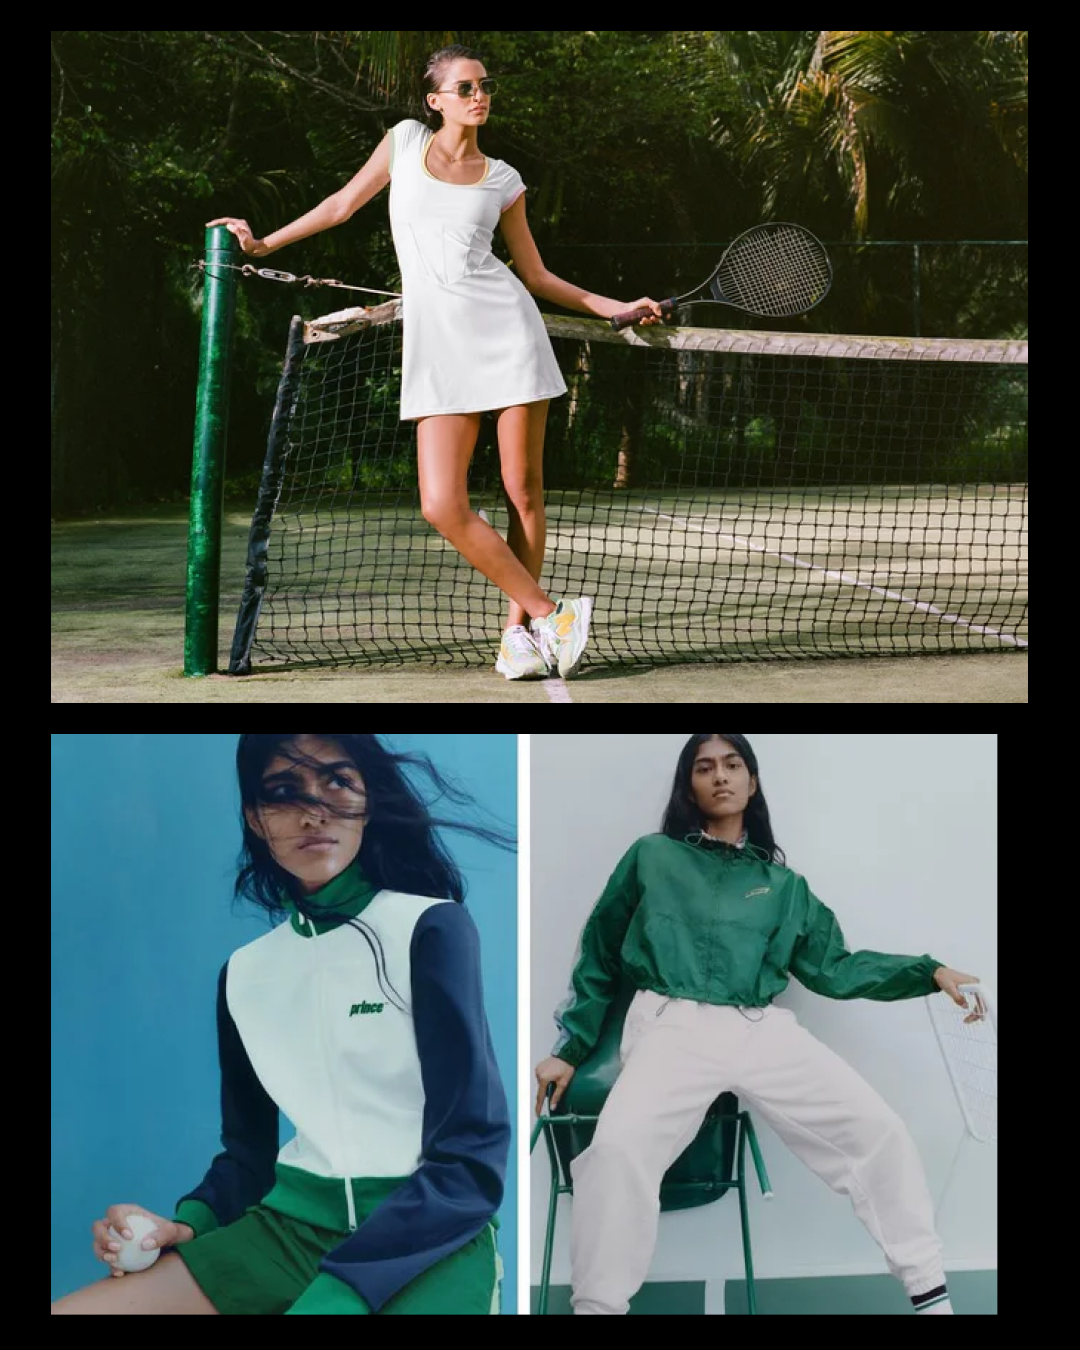 Tenniscore gây sốt giới trẻ: Khi quần áo thể thao trở thành cảm hứng mặc đẹp - Ảnh 3.